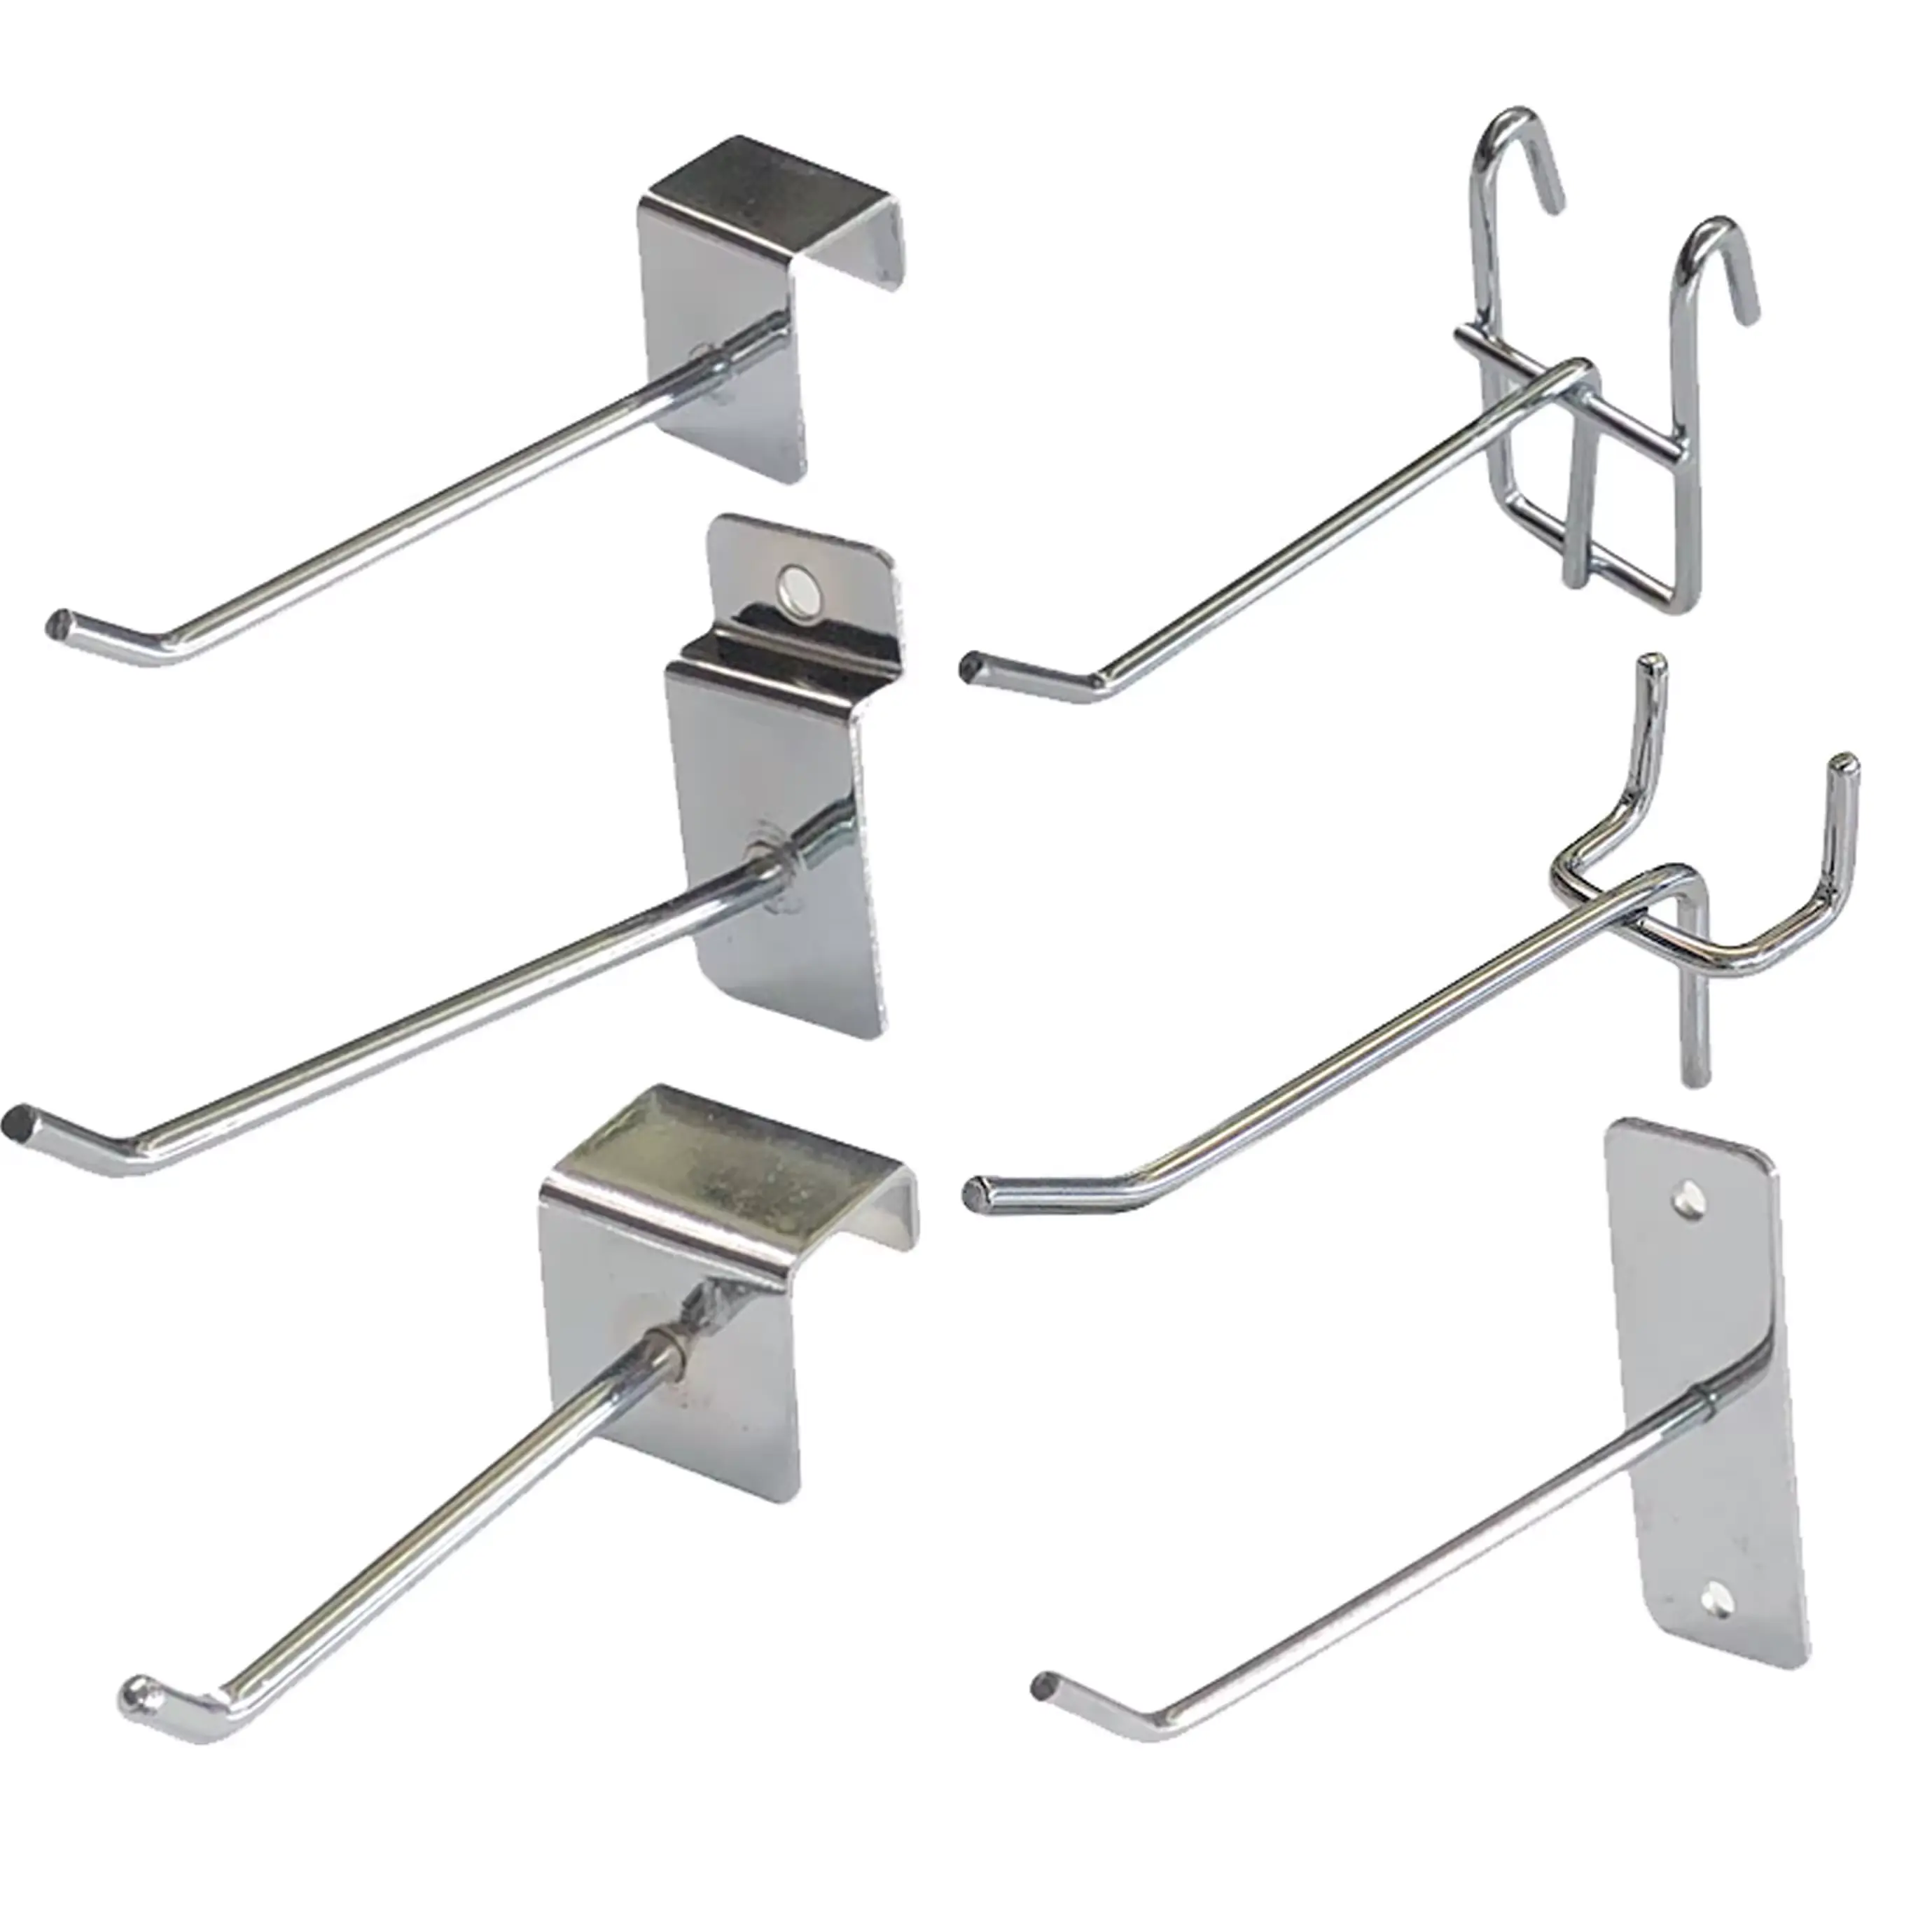 Wholesale Retail Store Metal Steel Slatwall Panel Security Hanging Display Pegboard Hooks